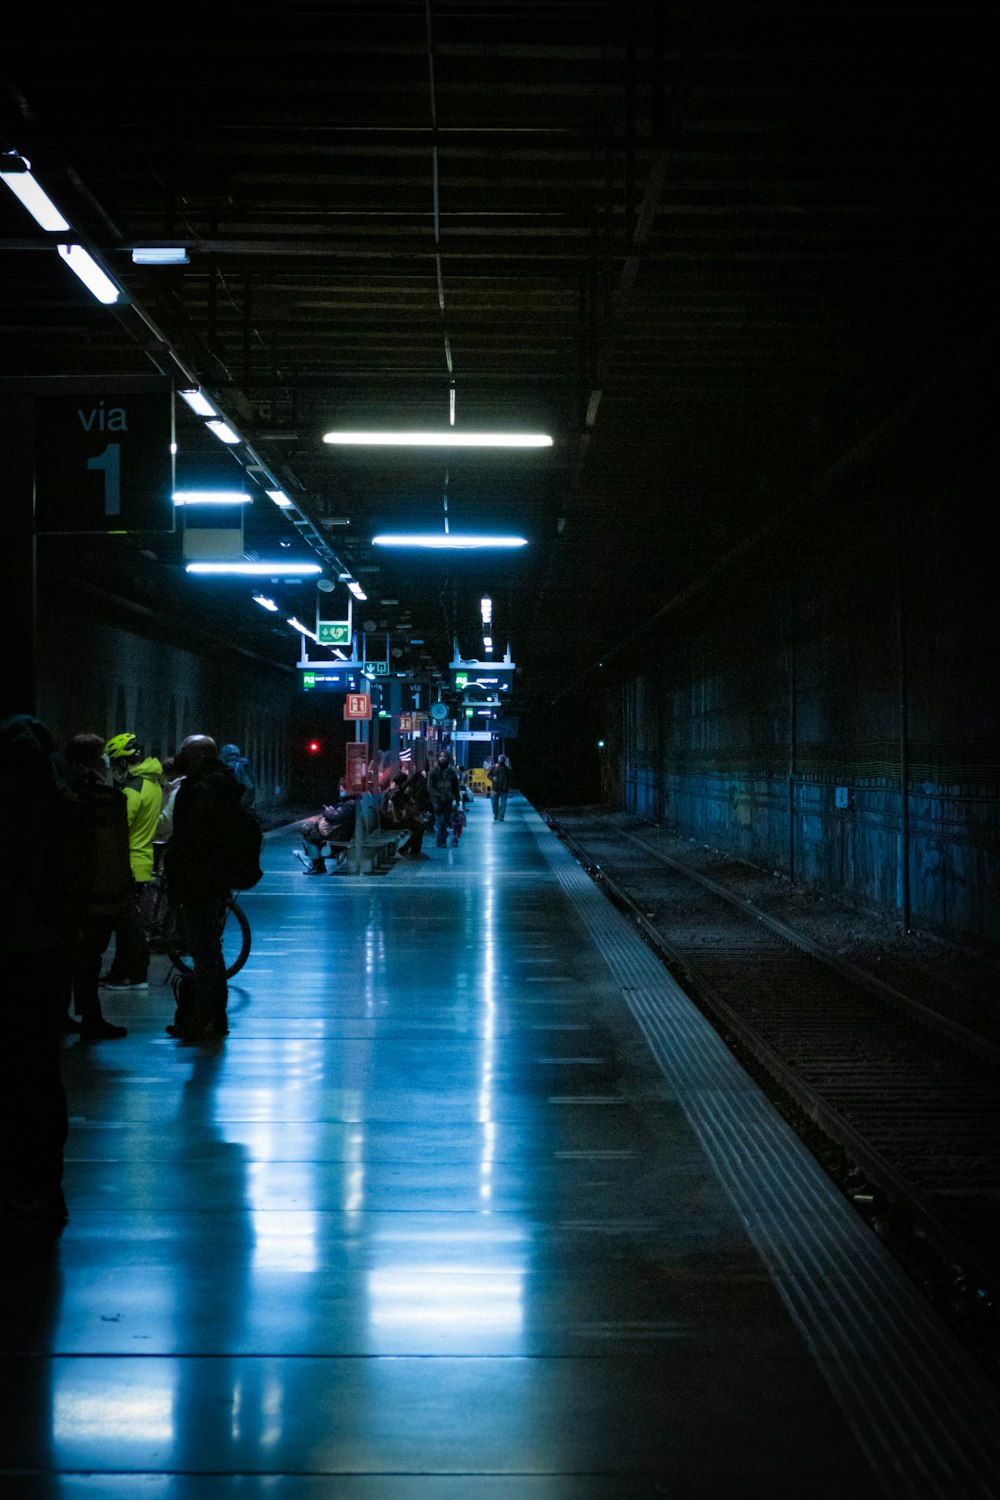 Gente caminando en la estación de tren